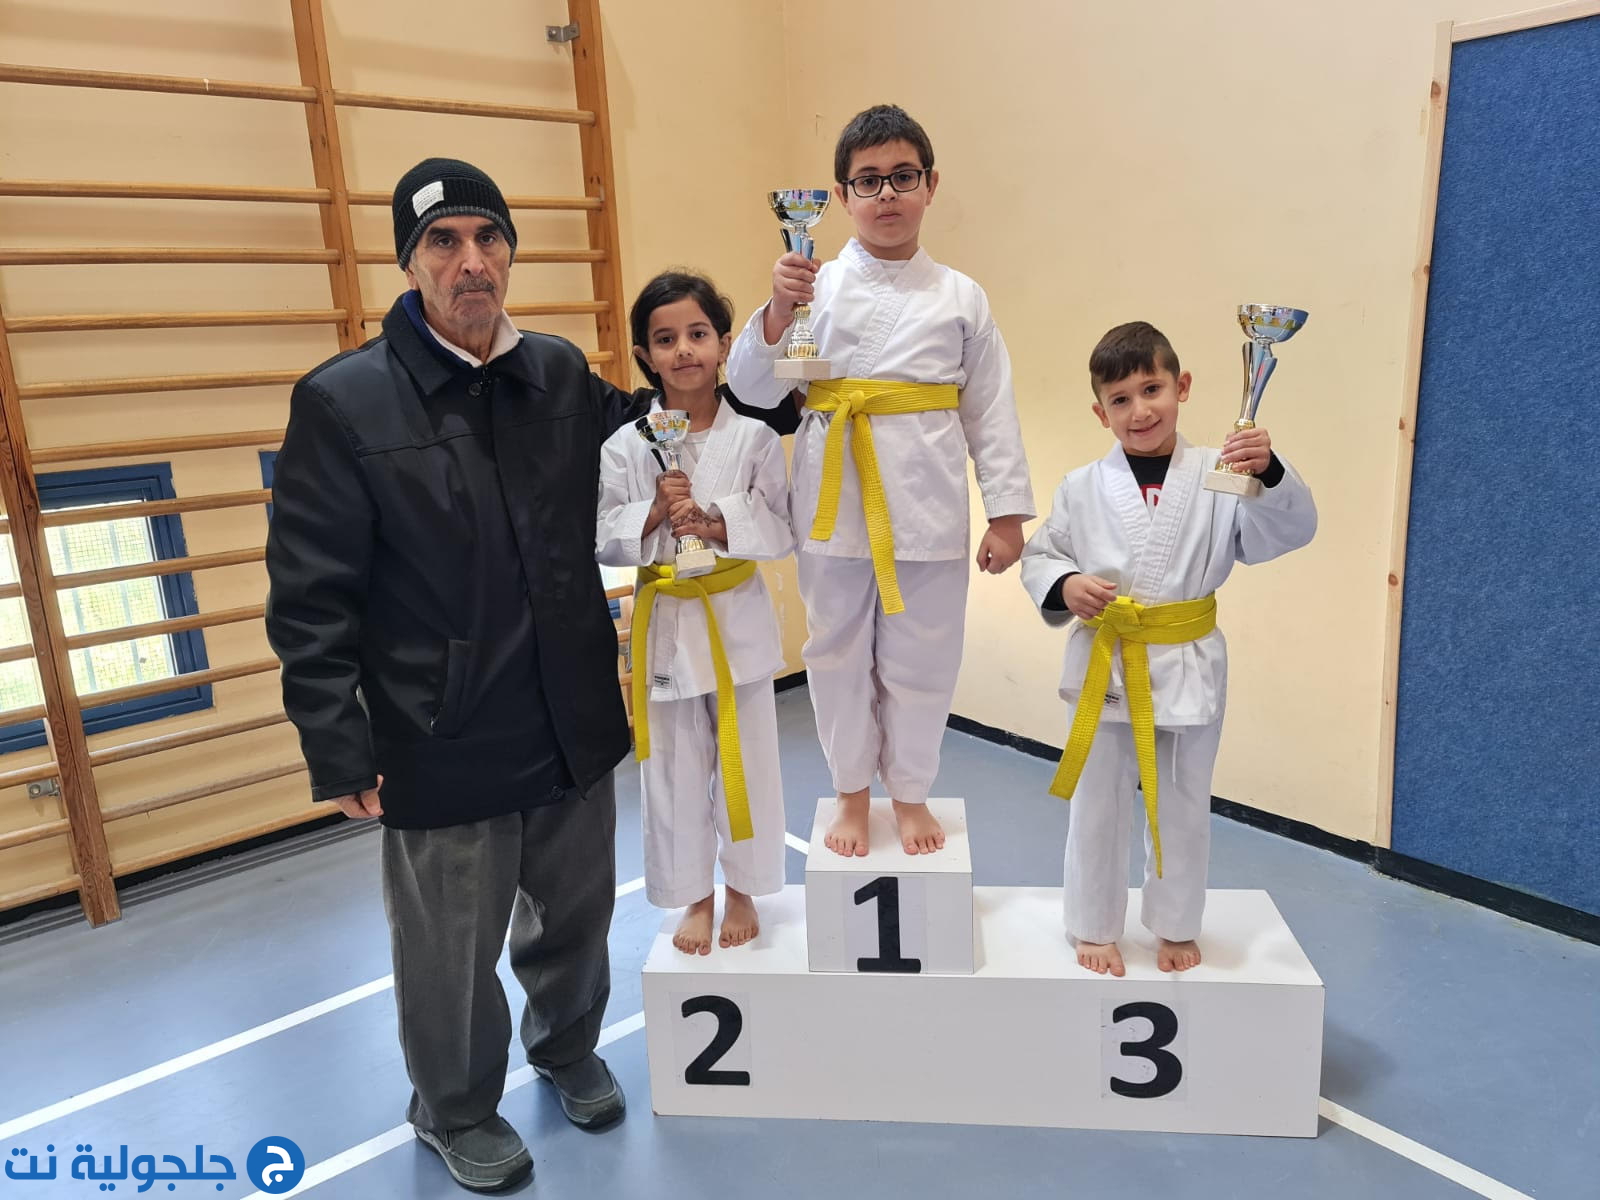 مدرسة الكراتيه القطرية Hosni kai karate تختتم بطولة الطيرة على اسم سهى منصور